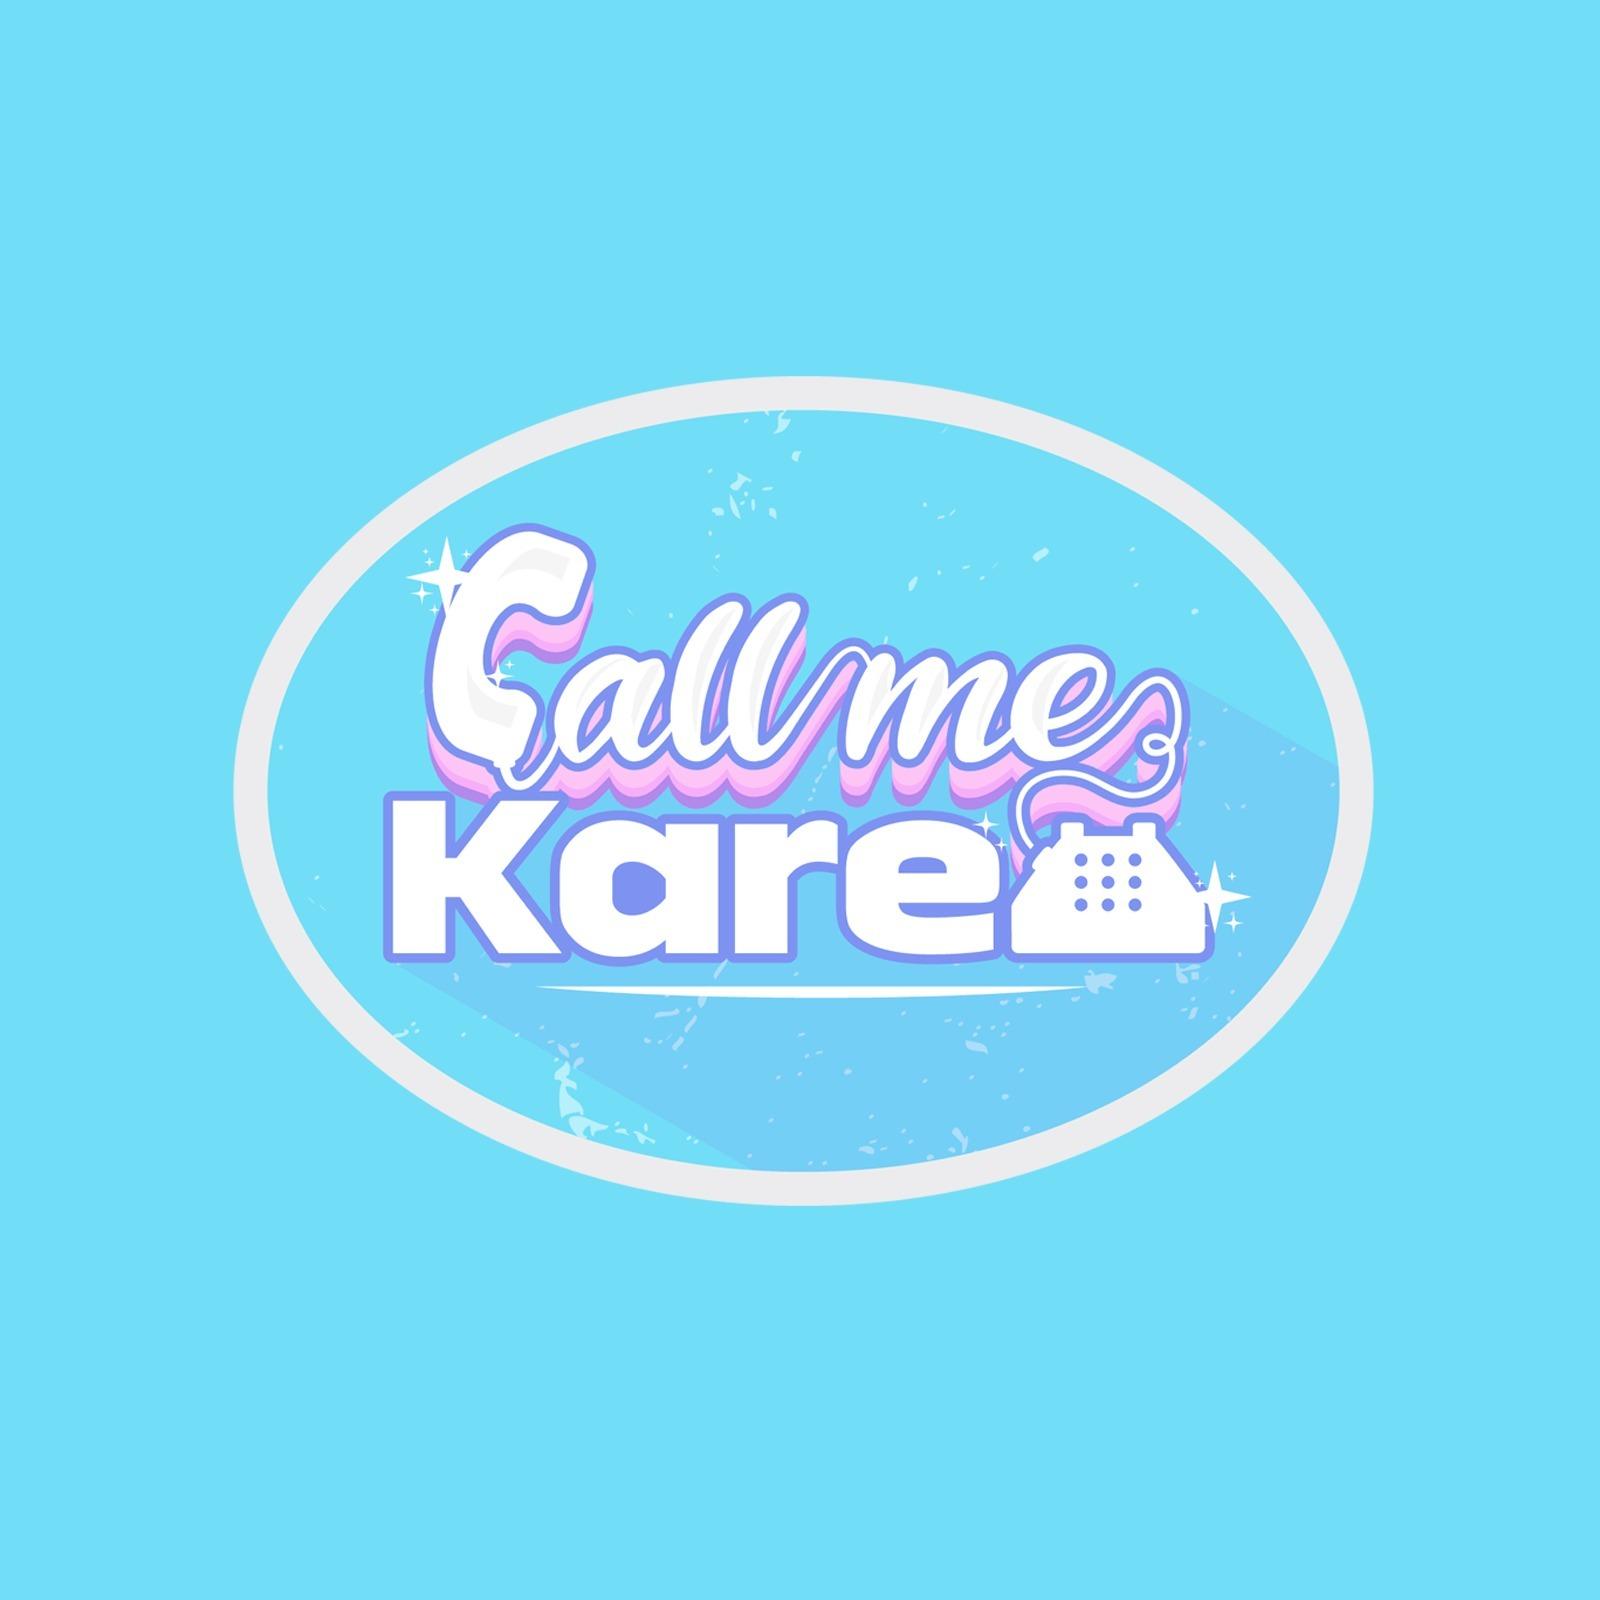 Call me Karen